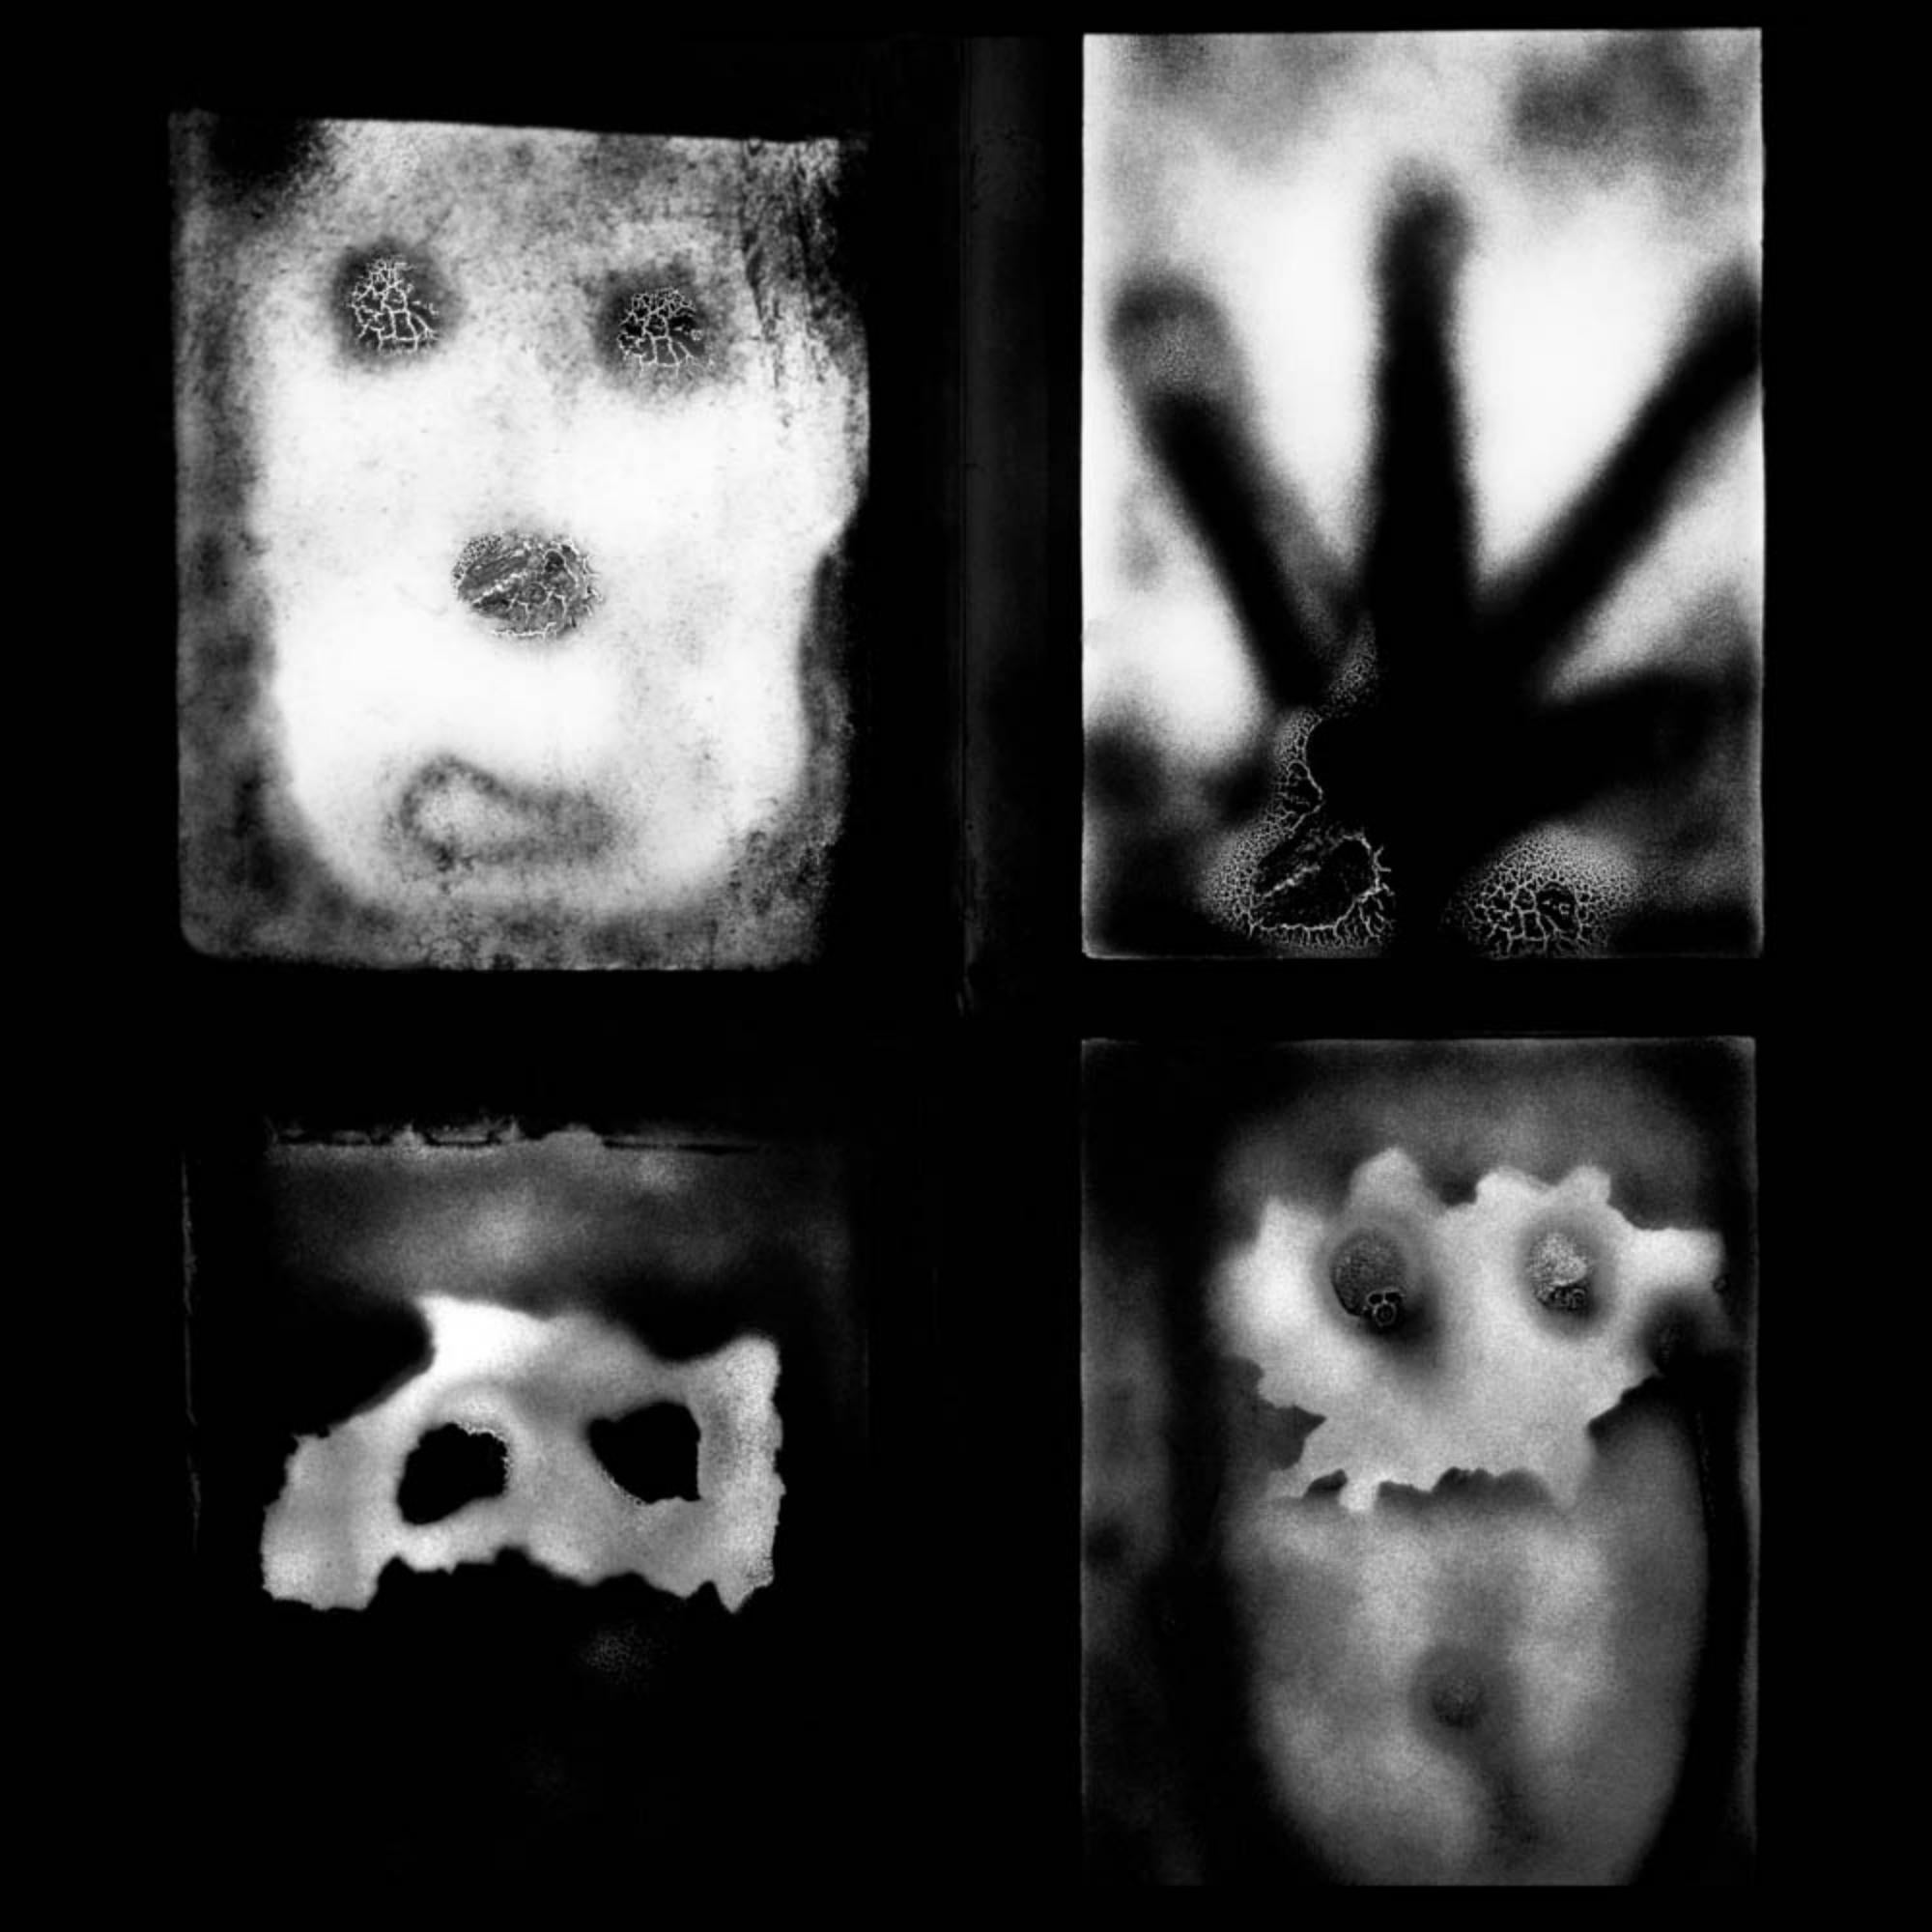 Roger Ballen
Manifestation, de la série "The Theatre of Apparitions", 2007
Caisson lumineux Texflex simple face, revêtement époxy noir ferro
Boîte à lumière 100 x 100 x 9 cm (39 3/8 x 39 3/8 x 3 1/2 in.)
Édition de 3 (#1/3)

Tous les caissons